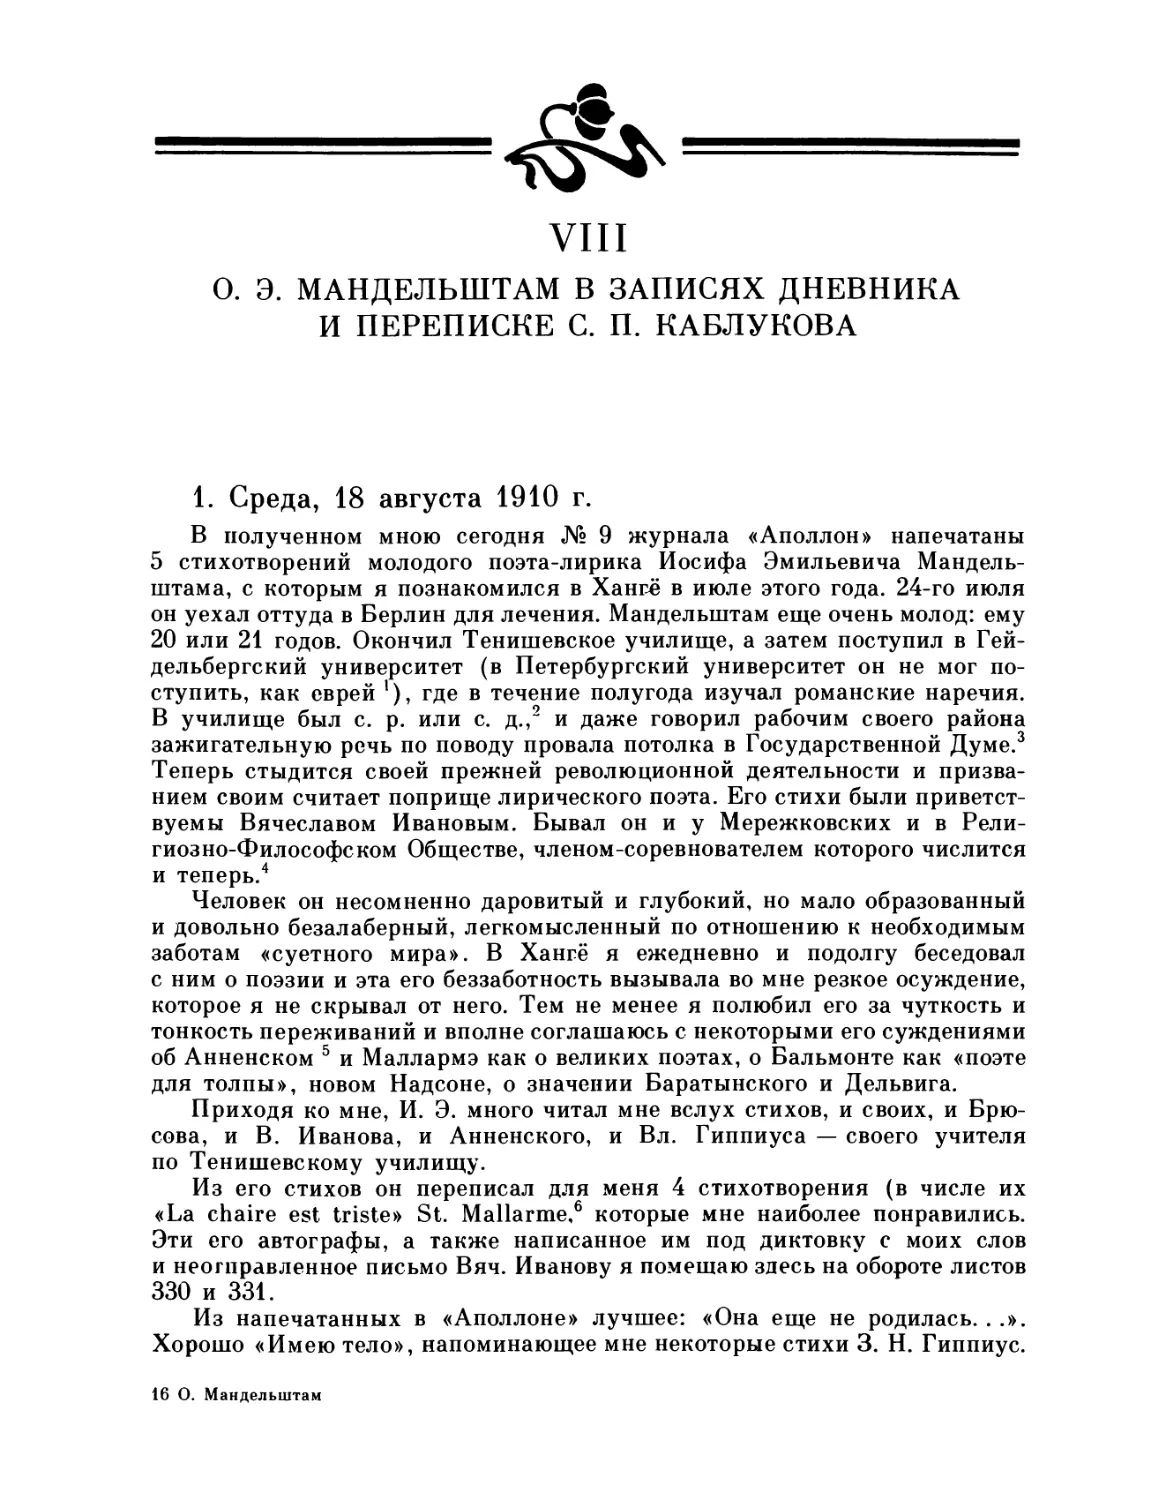 VIII. О. Э. Мандельштам в записях, дневника и переписке С. П. Каблукова